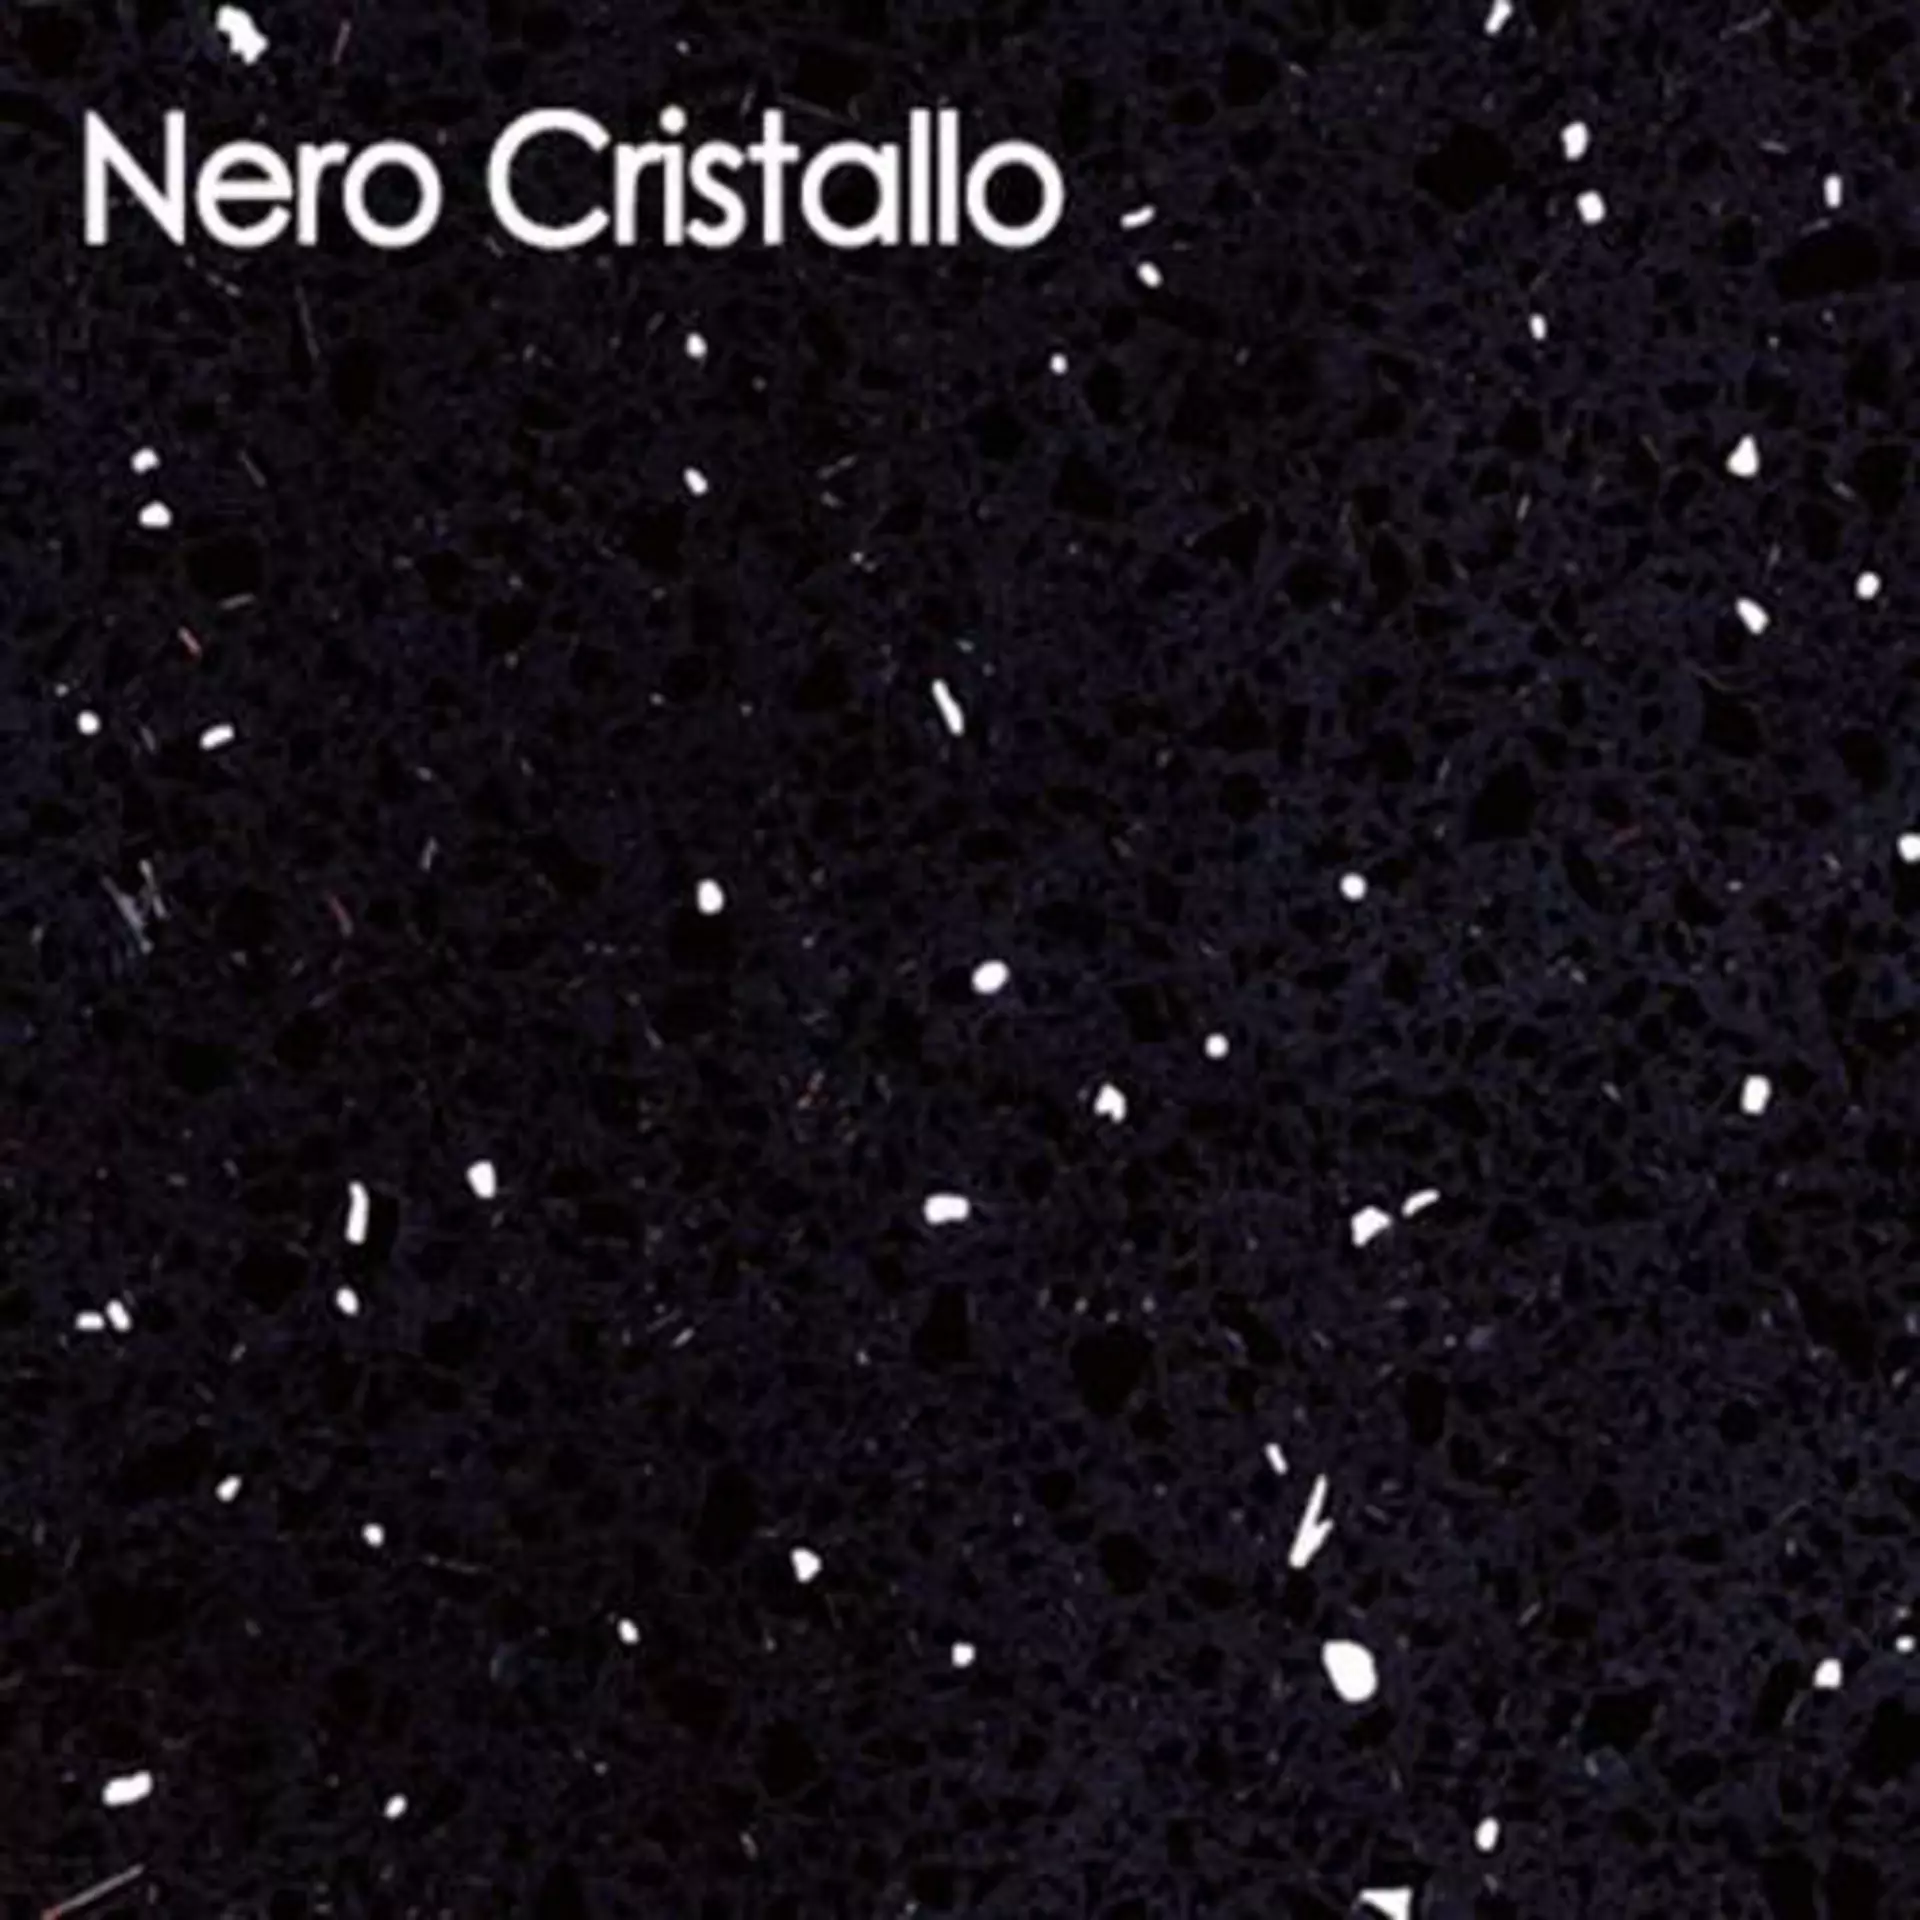 Arbeitsplatte aus Kunststein in der Ausführung Nero Cristallo. Die schwarz glänzende Arbeitsplatte ist mit weißen Sprenkeln durchzogen, so dass der edle Kristalllook entsteht.